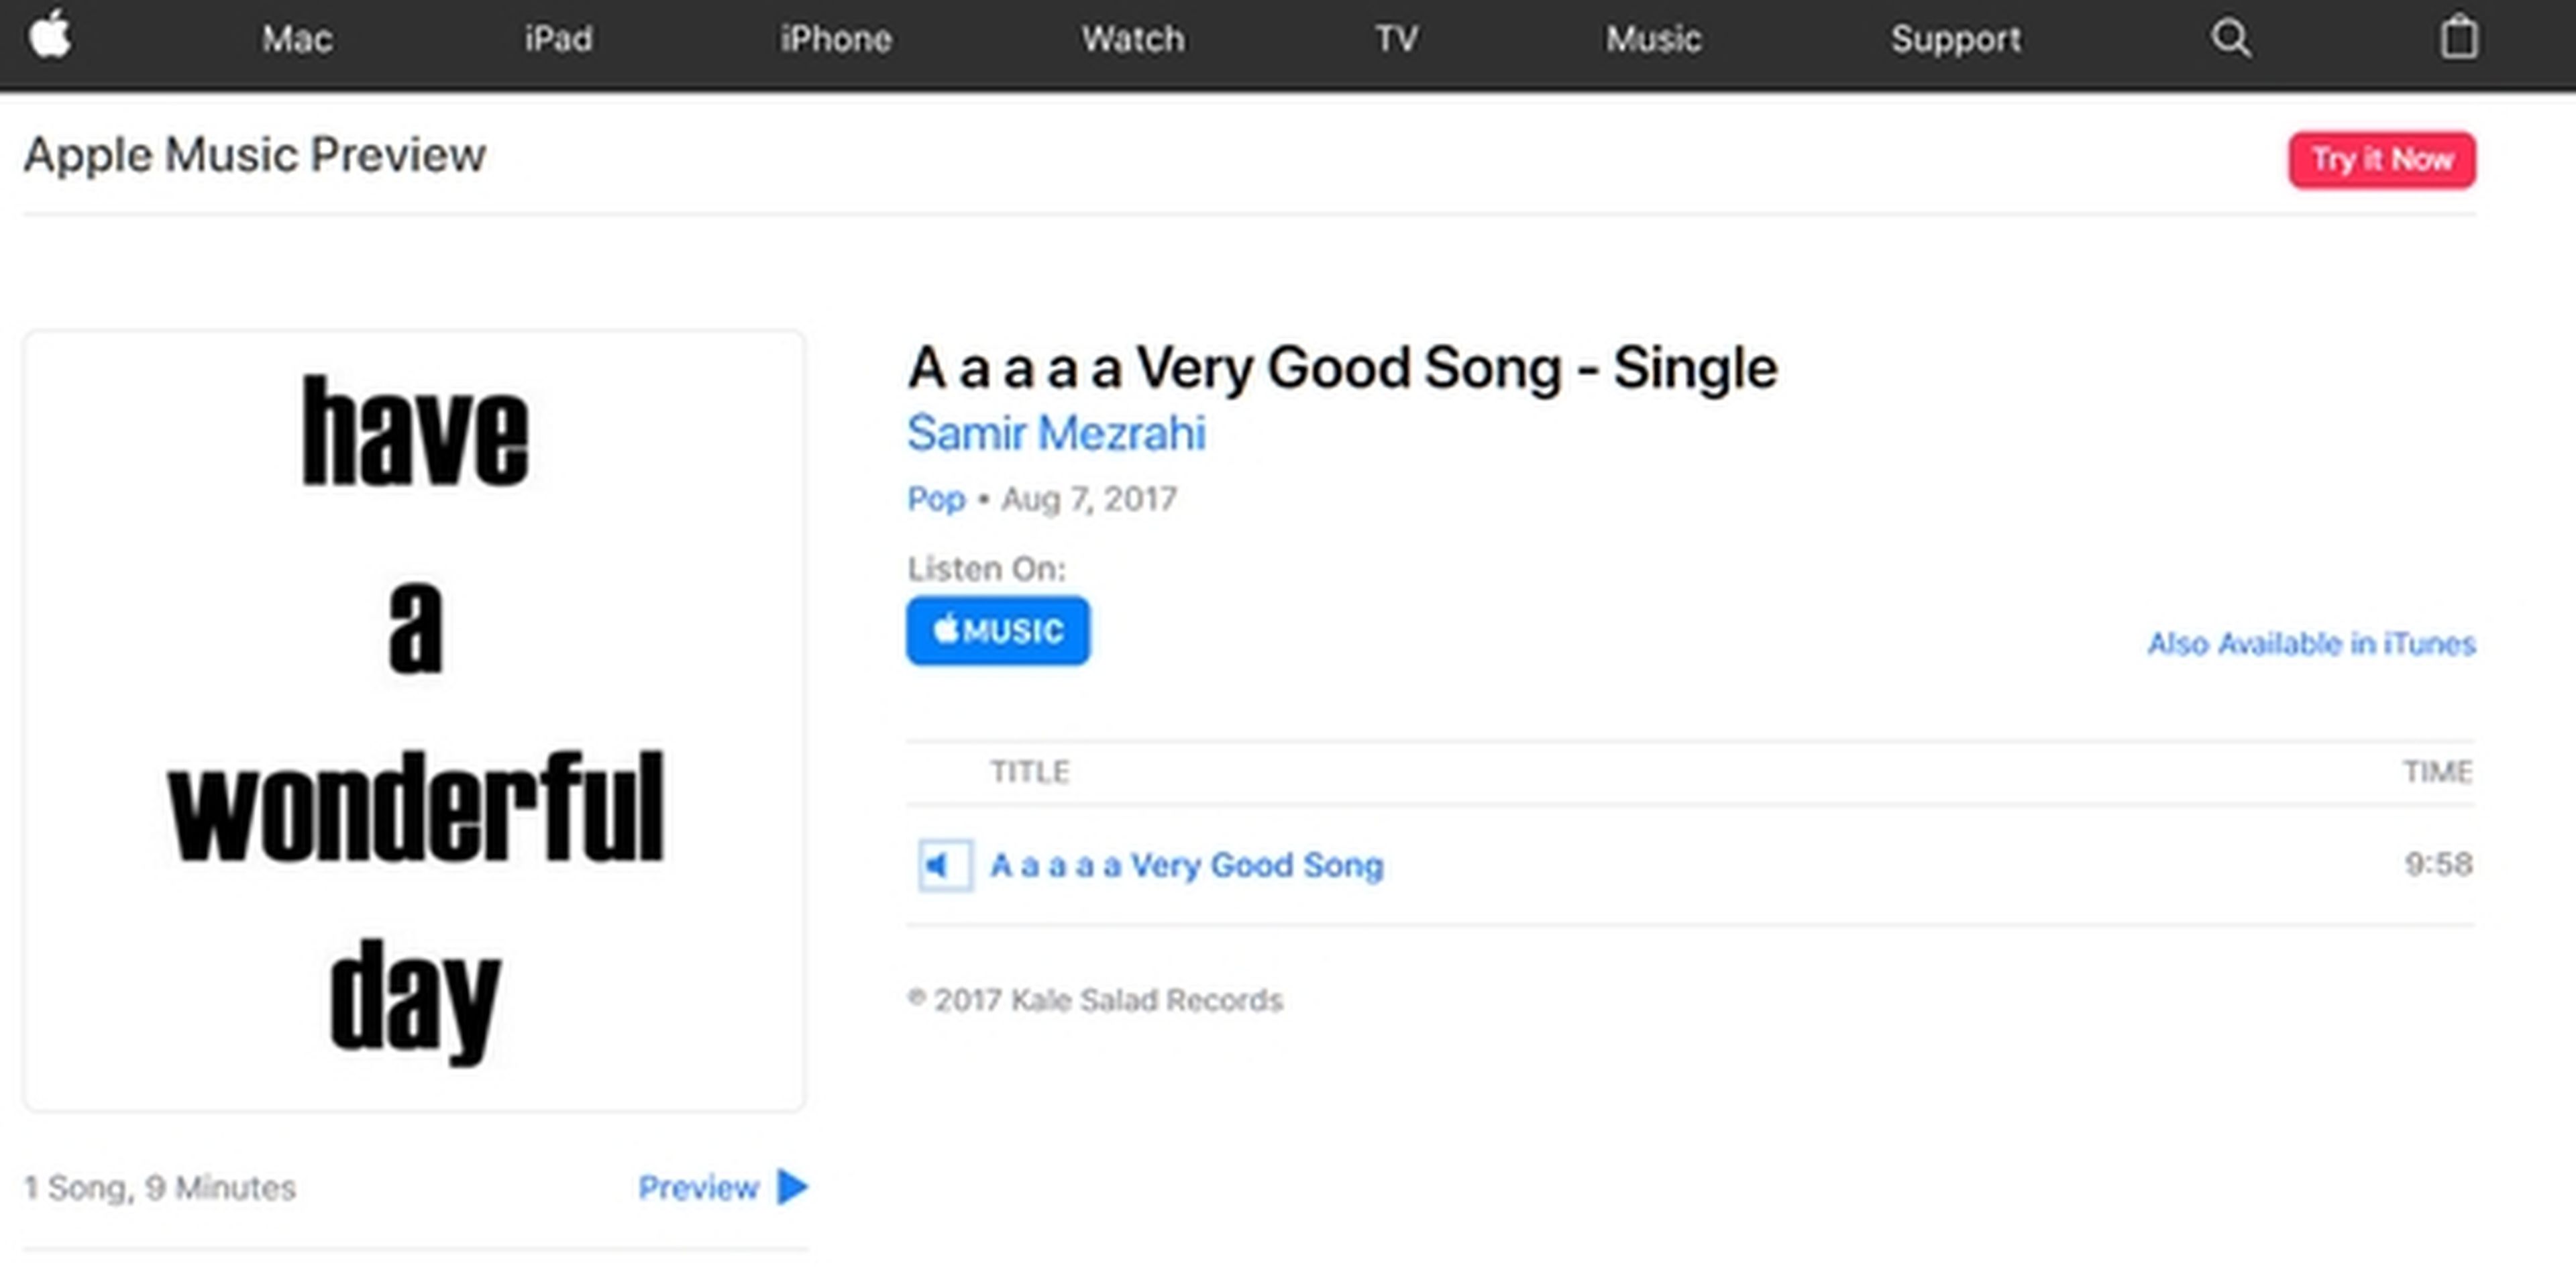 La canción A a a a a Very Good Song, que no tiene música ni letra, solo silencio, ha entrado en el Top 70 de las más vendidas en iTunes. ¿Quieres saber por qué?